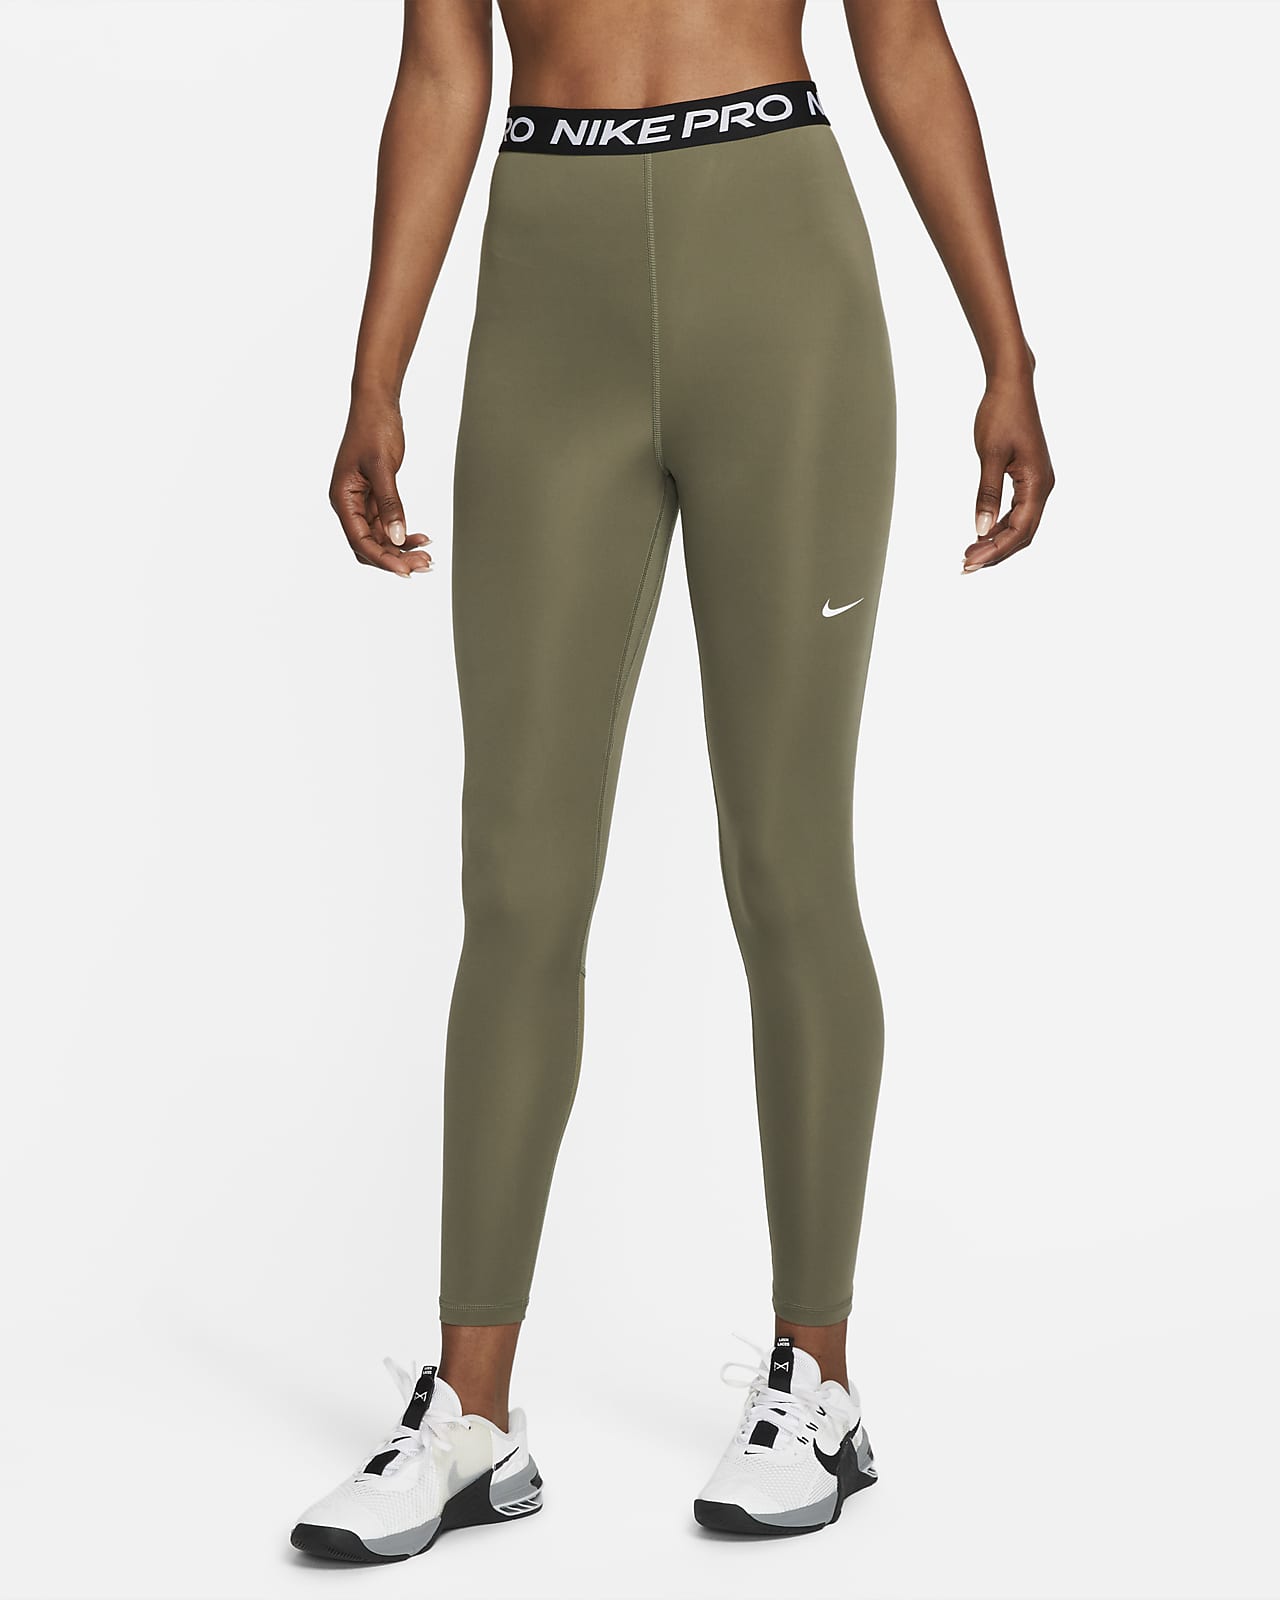 Γυναικείο ψηλόμεσο κολάν 7/8 με φάσα από διχτυωτό υλικό Nike Pro 365